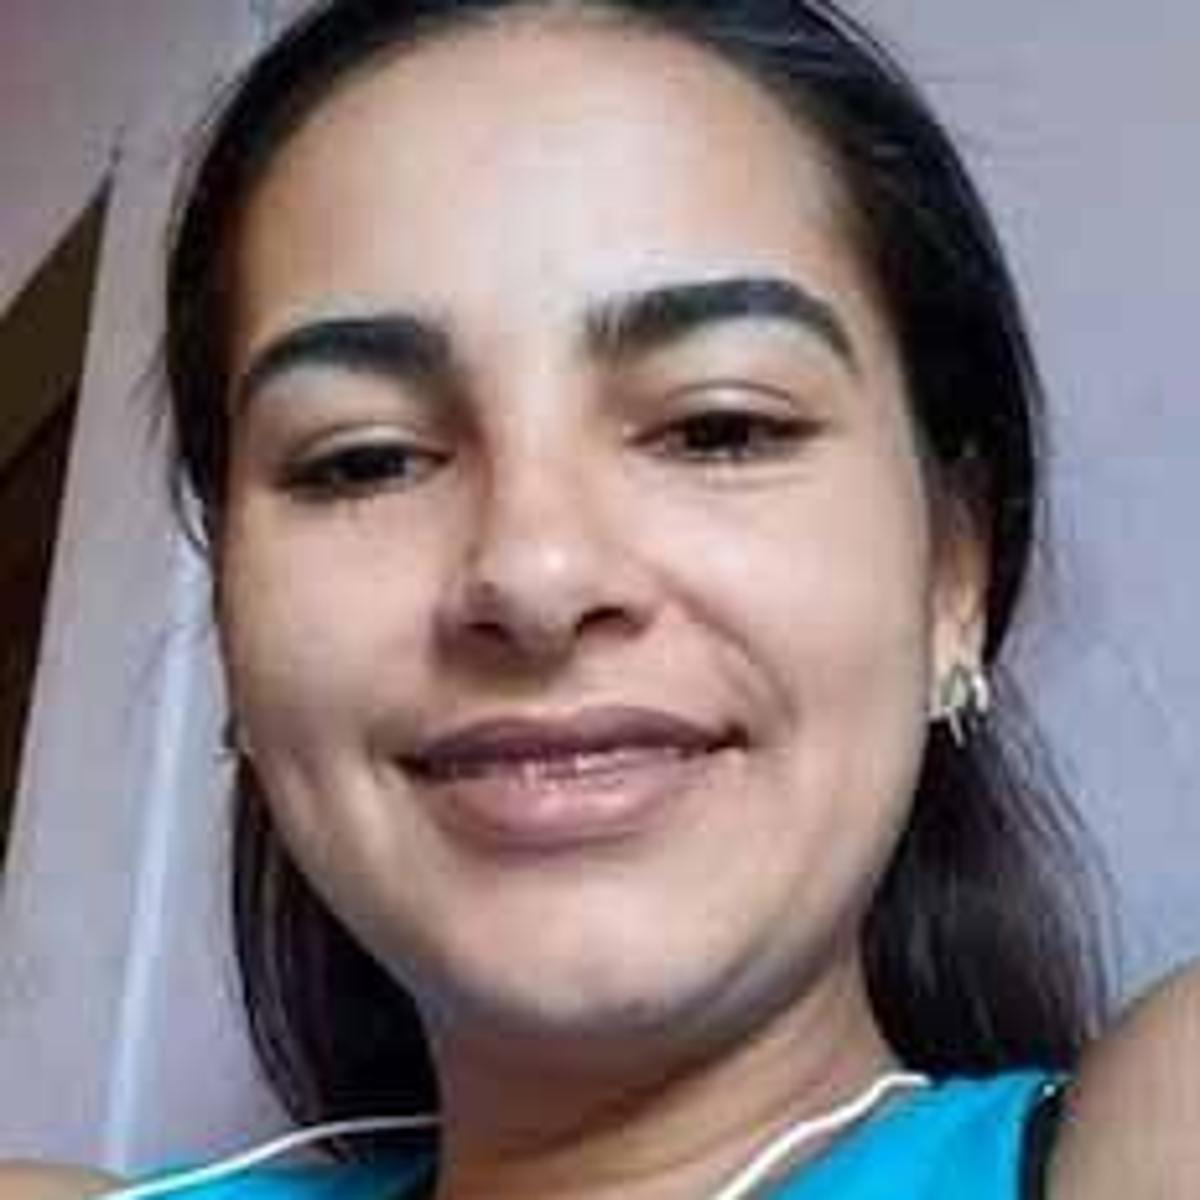 Trinidad Venezuelan S Boyfriend Killed Her Say Cops Stabroek News